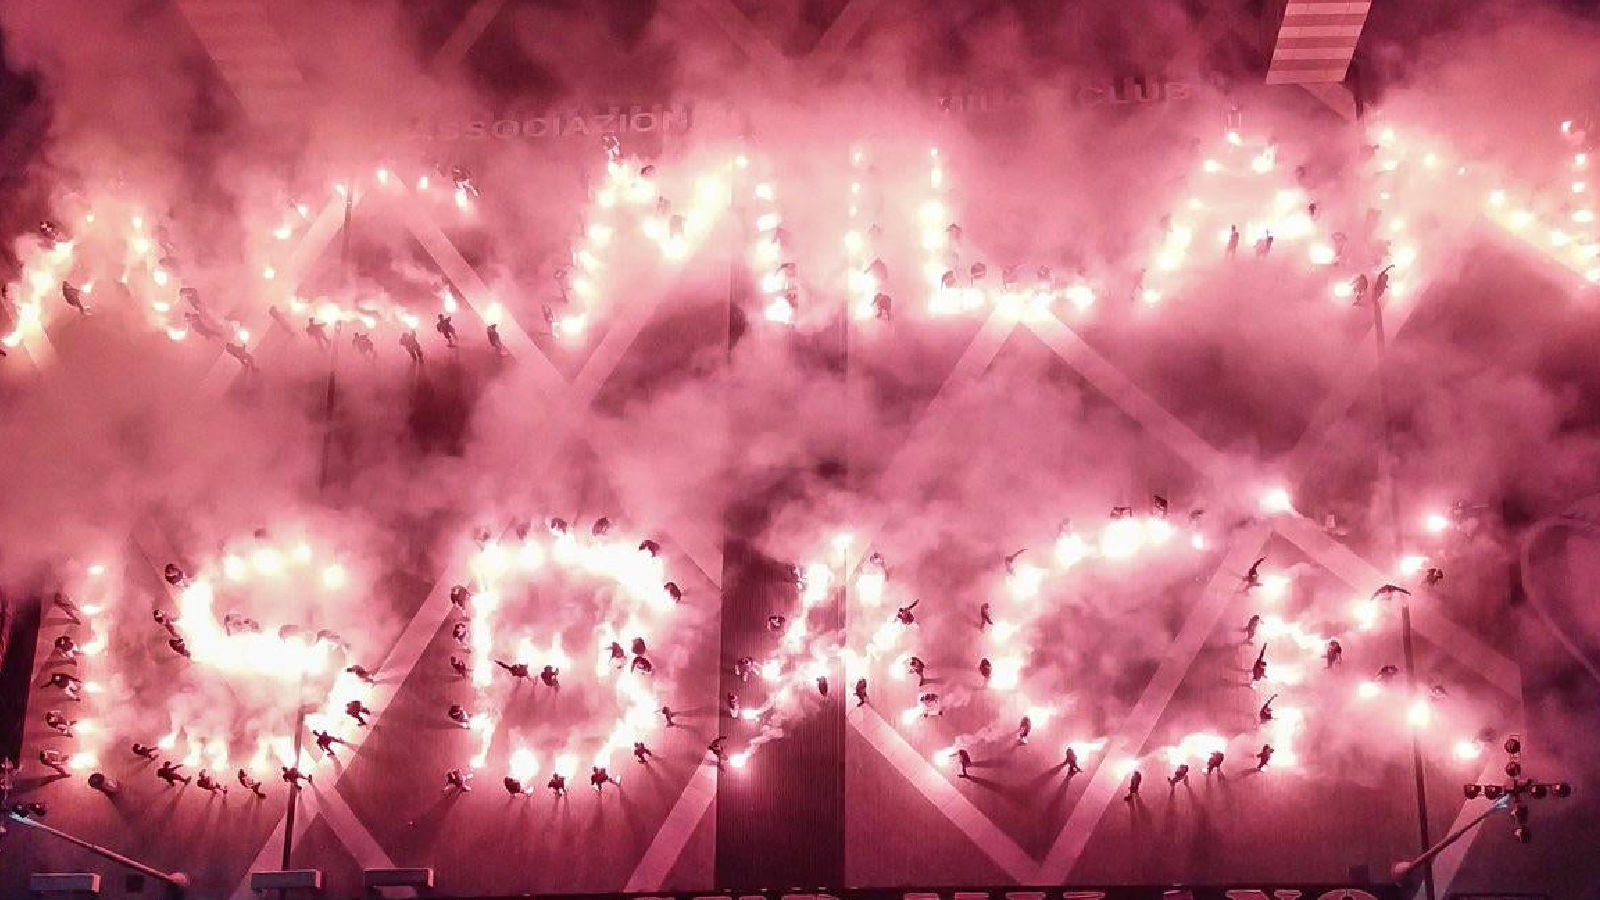 AC Milan fans pyro display